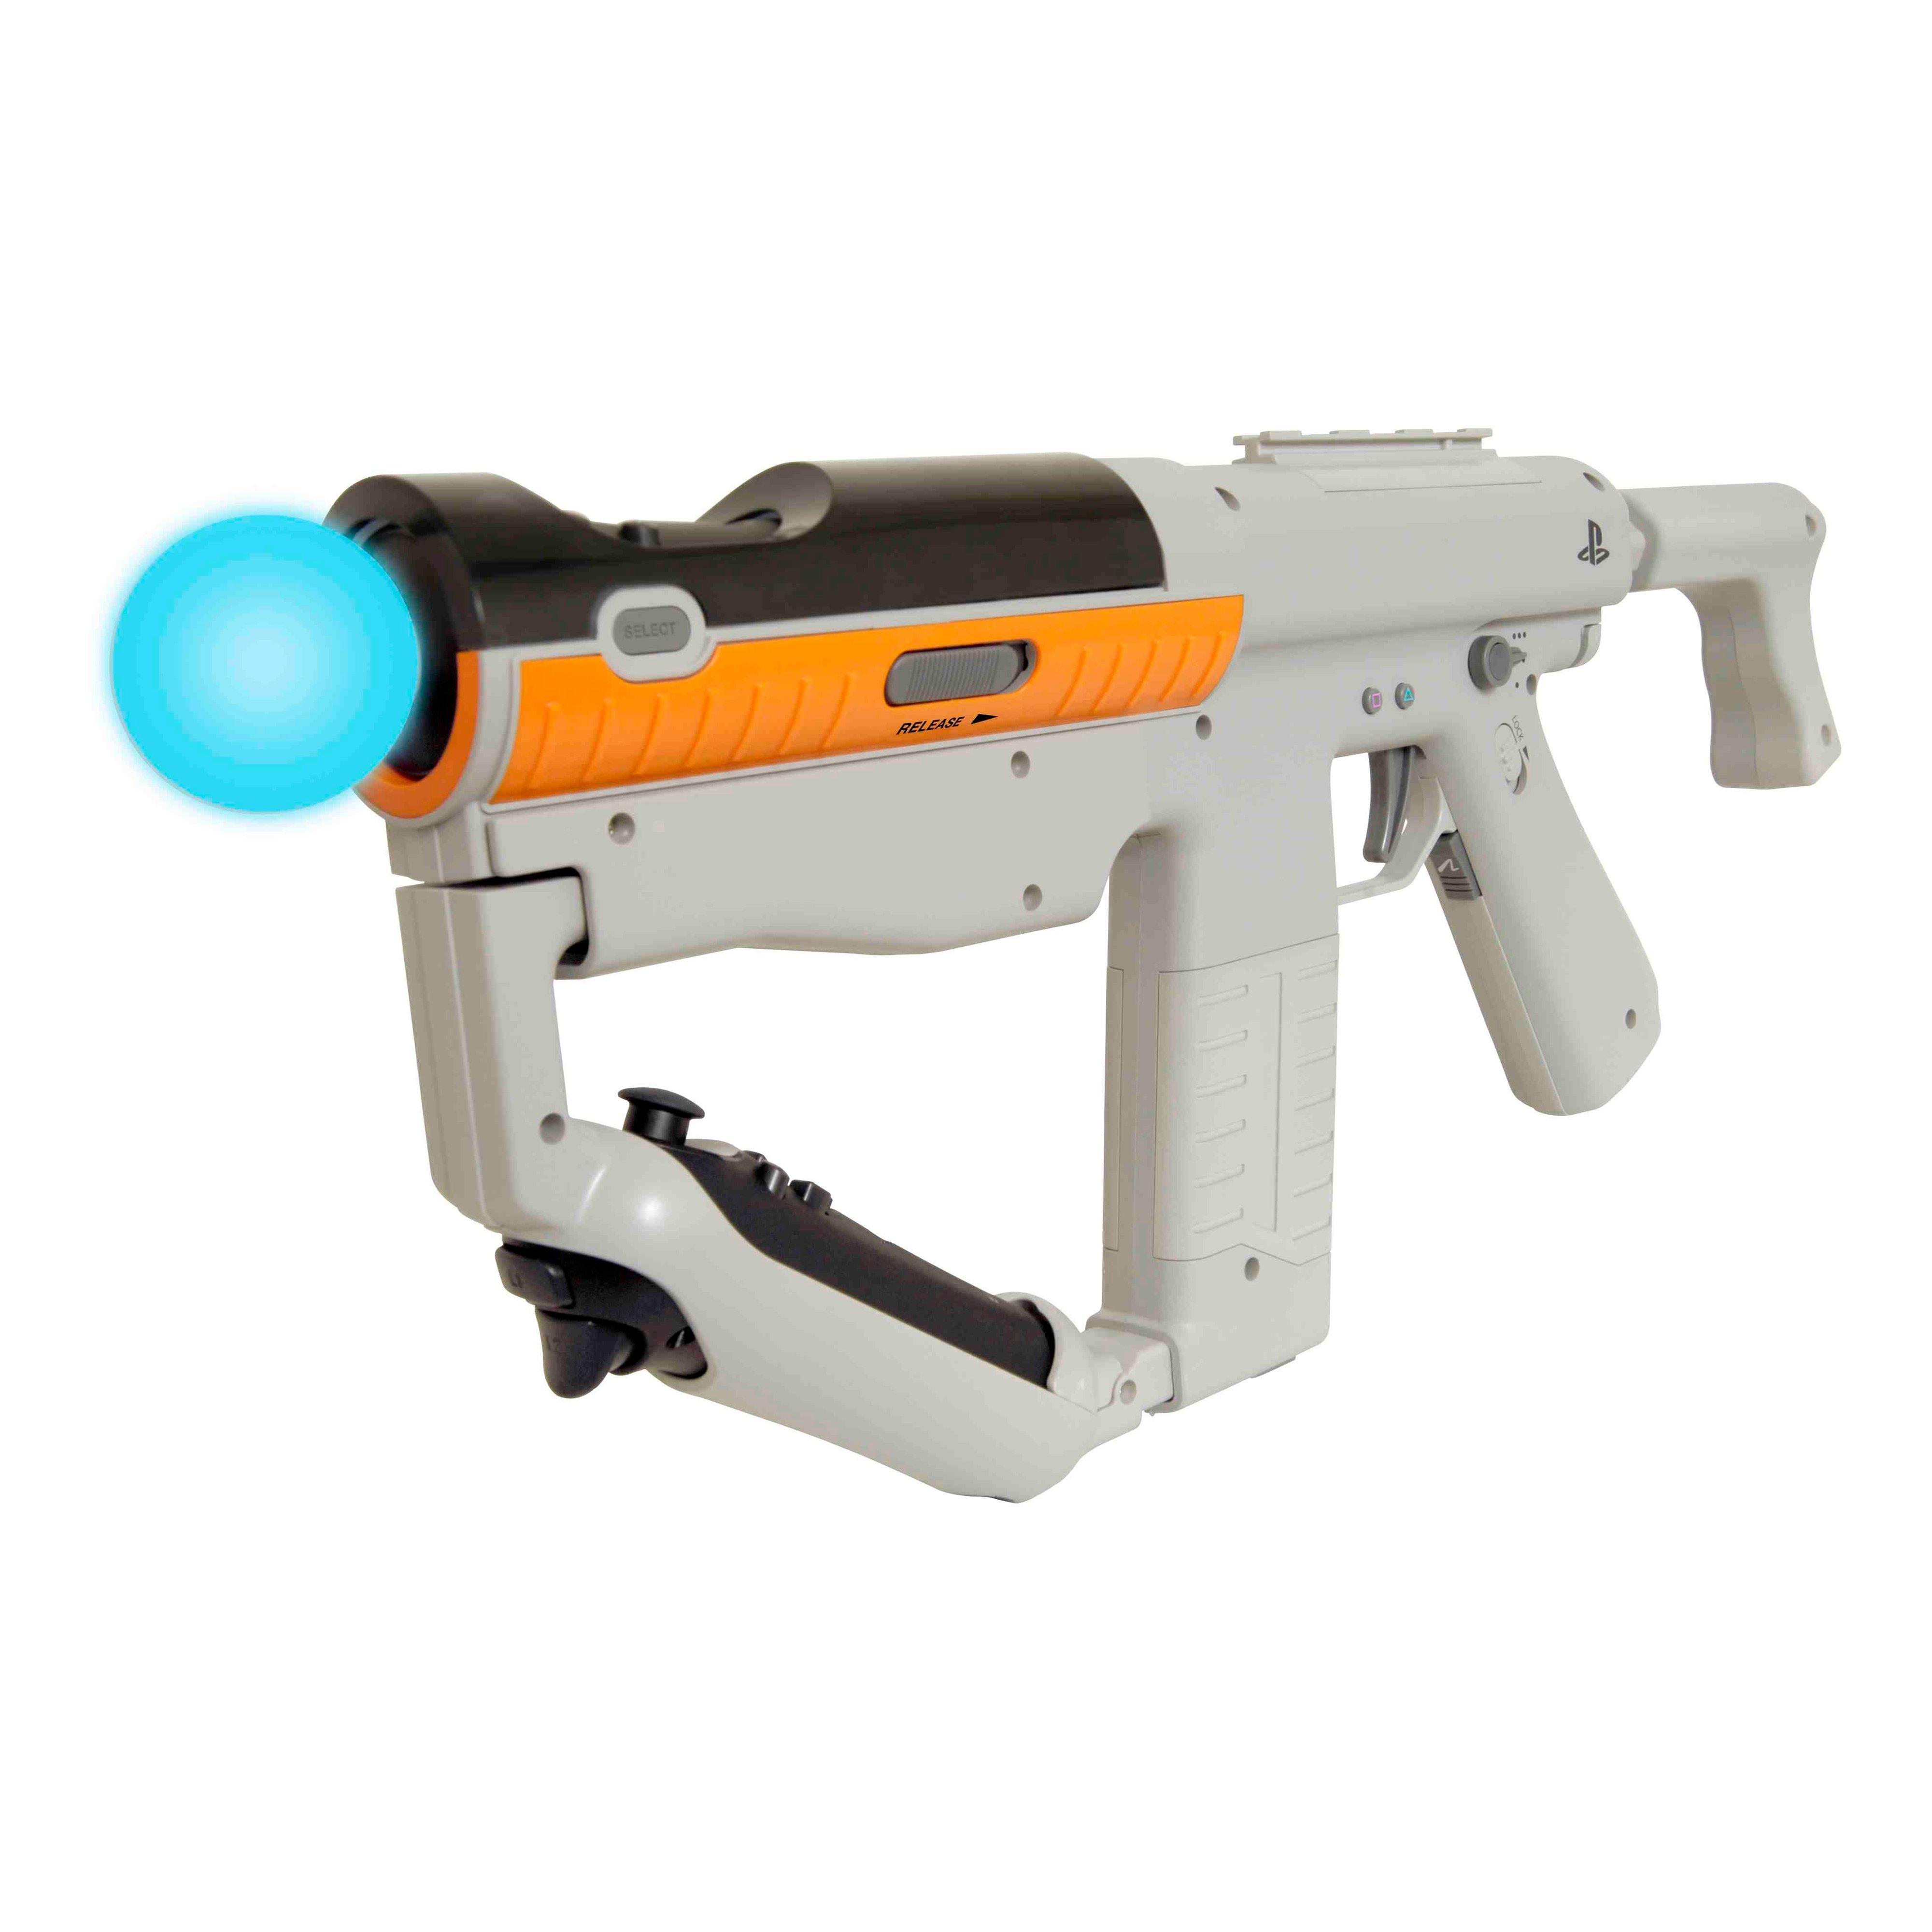 Pistole Laser Tag Battle Pack Sharper Image in Vendita Online